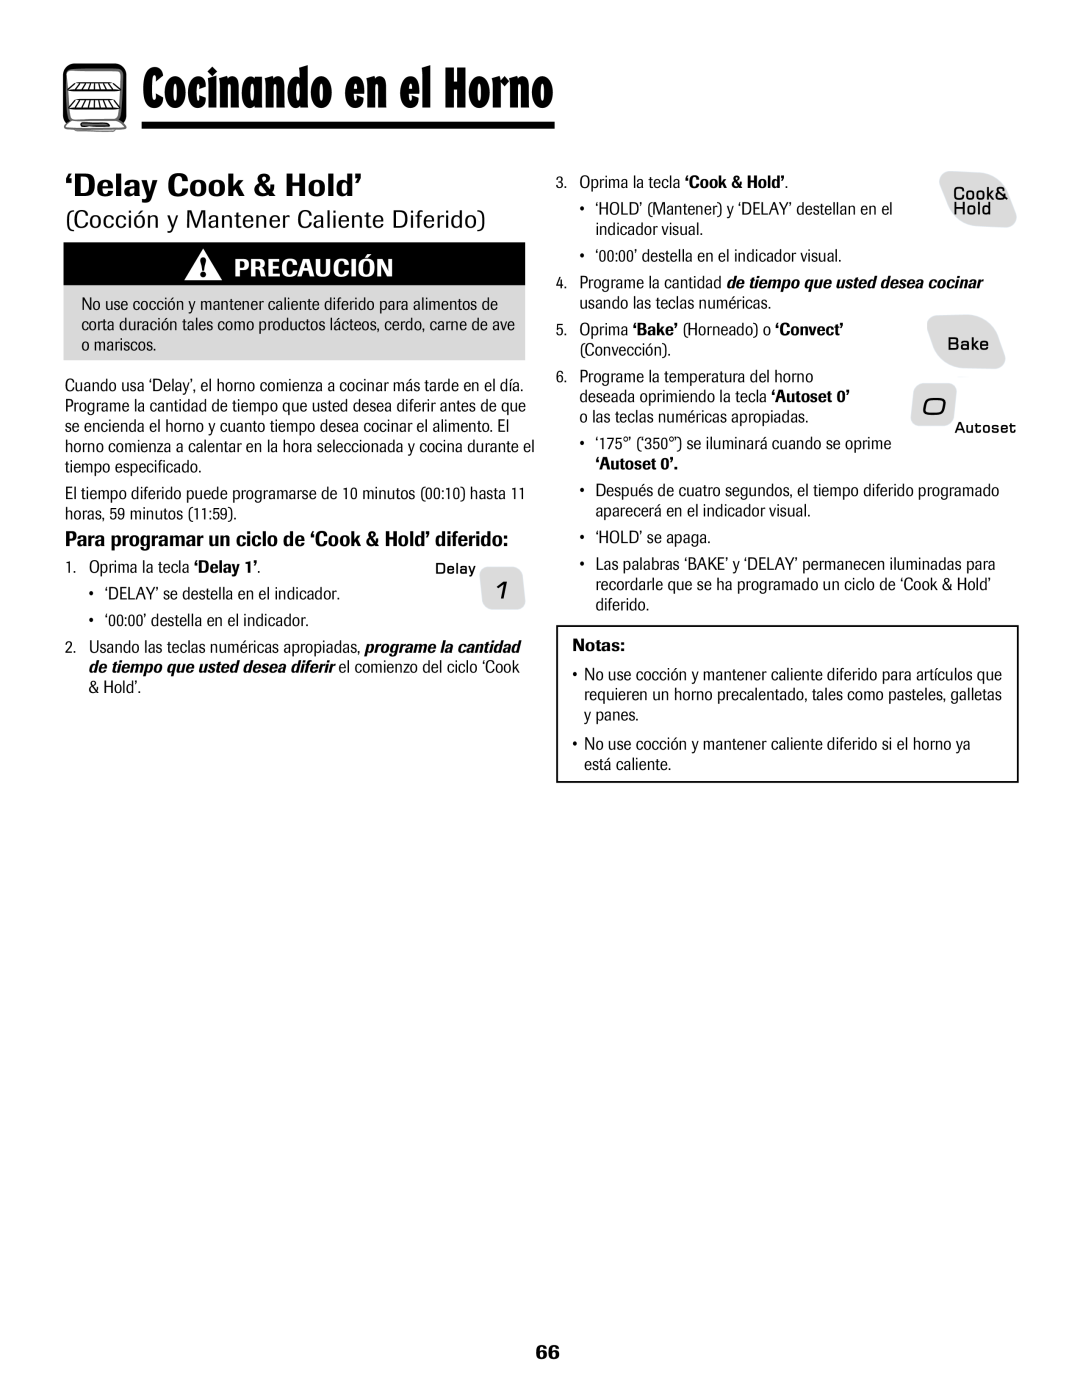 Amana 8113P487-60 ‘Delay Cook & Hold’, Cocción y Mantener Caliente Diferido, Cocinando en el Horno, Precaución 